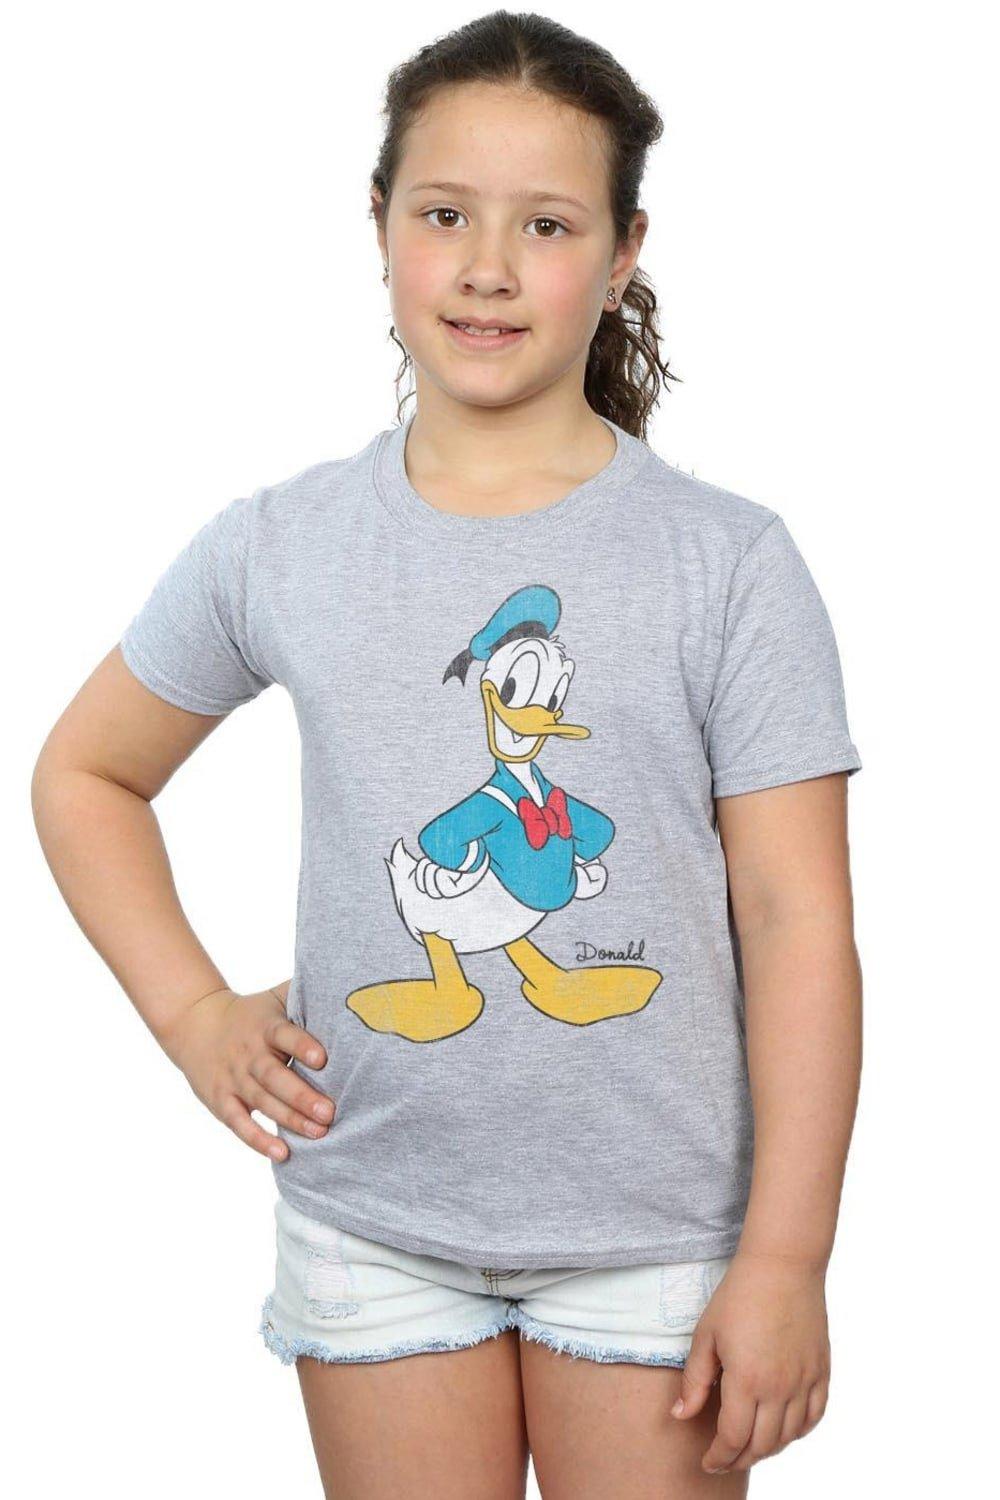 Классическая хлопковая футболка с изображением Дональда Дака Disney, серый картина из страз с изображением дональда дака диснея вышивка картина с животными украшение для дома рождественские подарки для детей